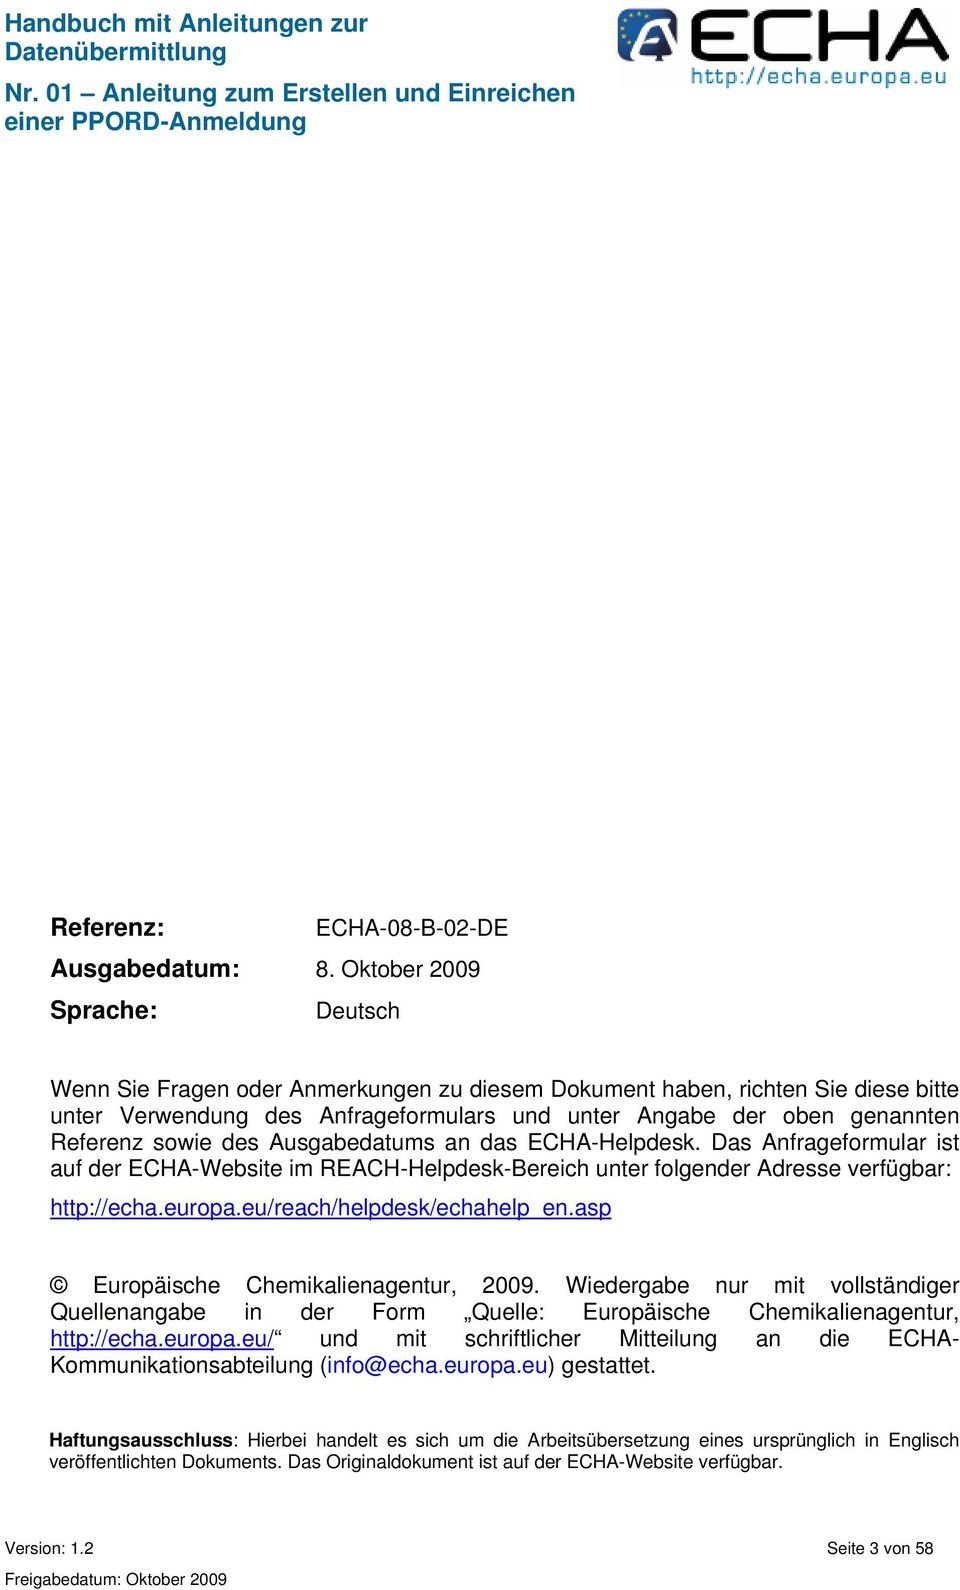 sowie des Ausgabedatums an das ECHA-Helpdesk. Das Anfrageformular ist auf der ECHA-Website im REACH-Helpdesk-Bereich unter folgender Adresse verfügbar: http://echa.europa.